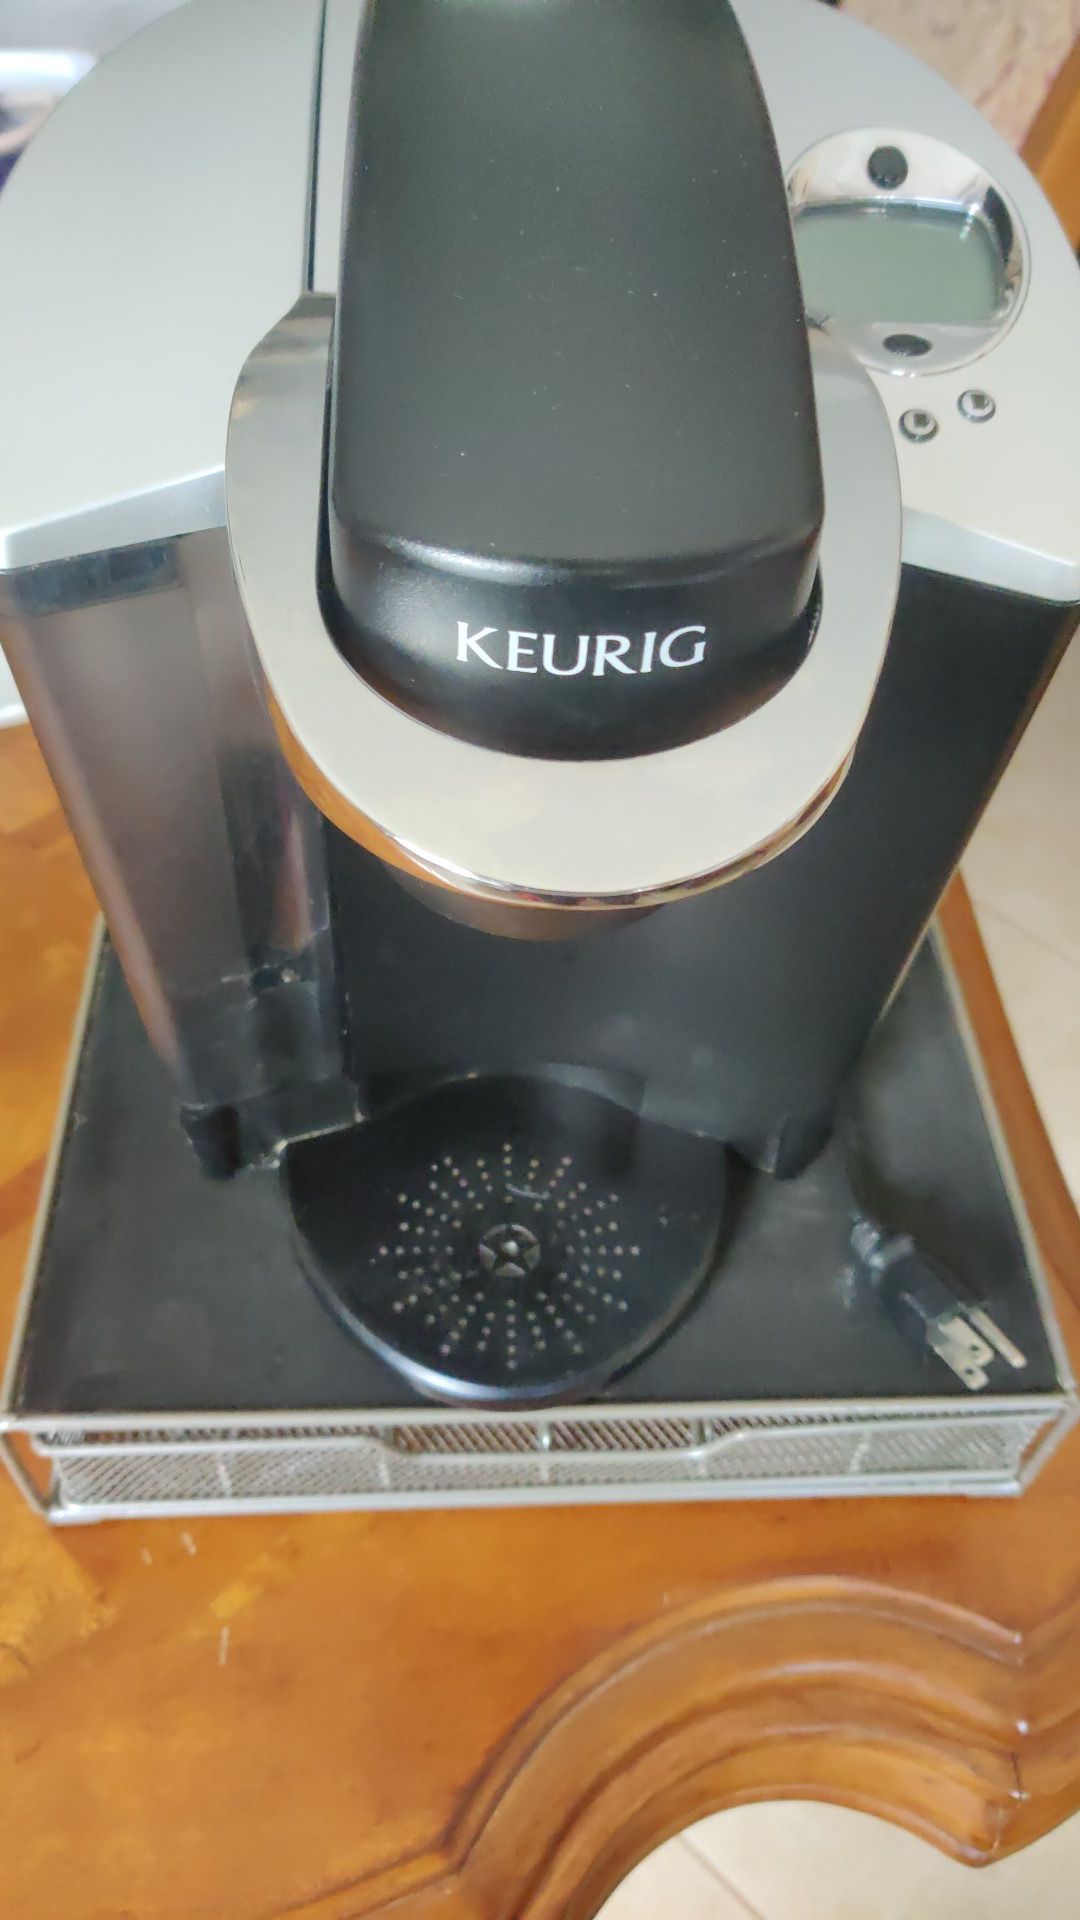 Keurig coffee and tea maker